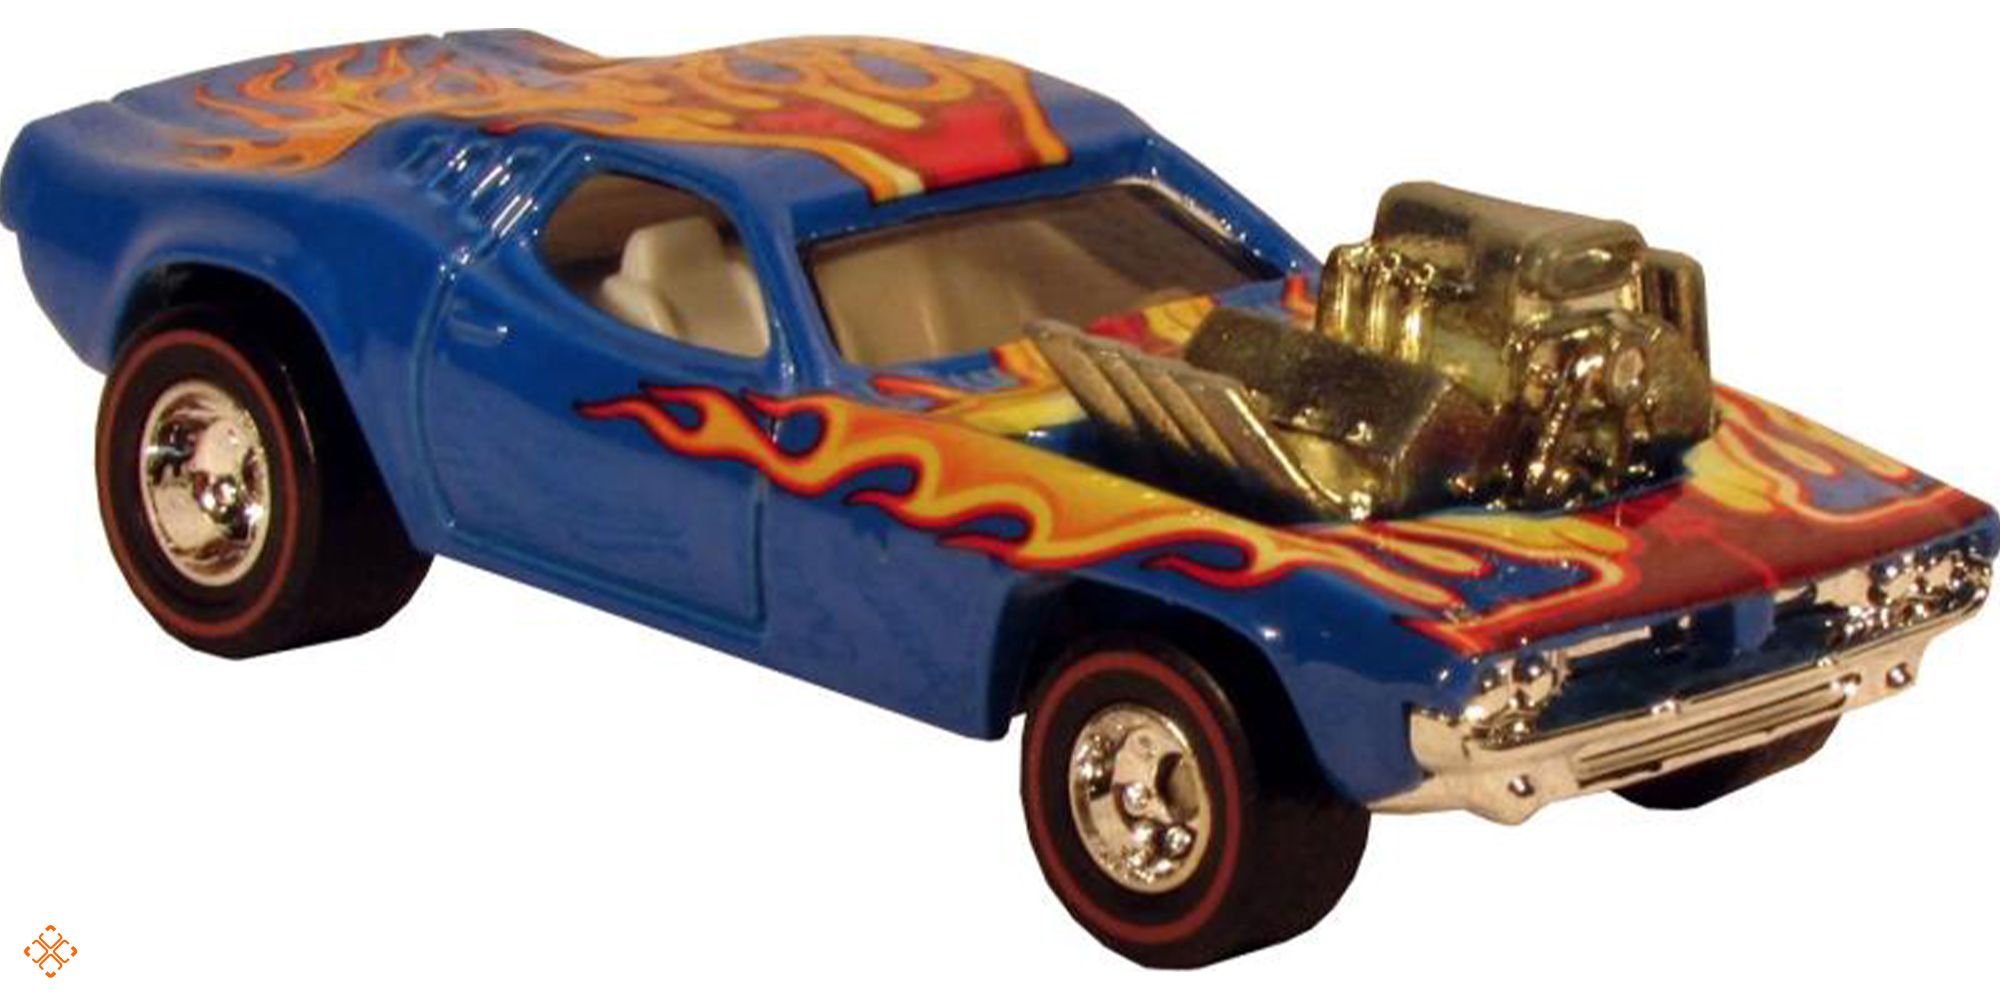 Hot Wheels blue Rodger Dodger car